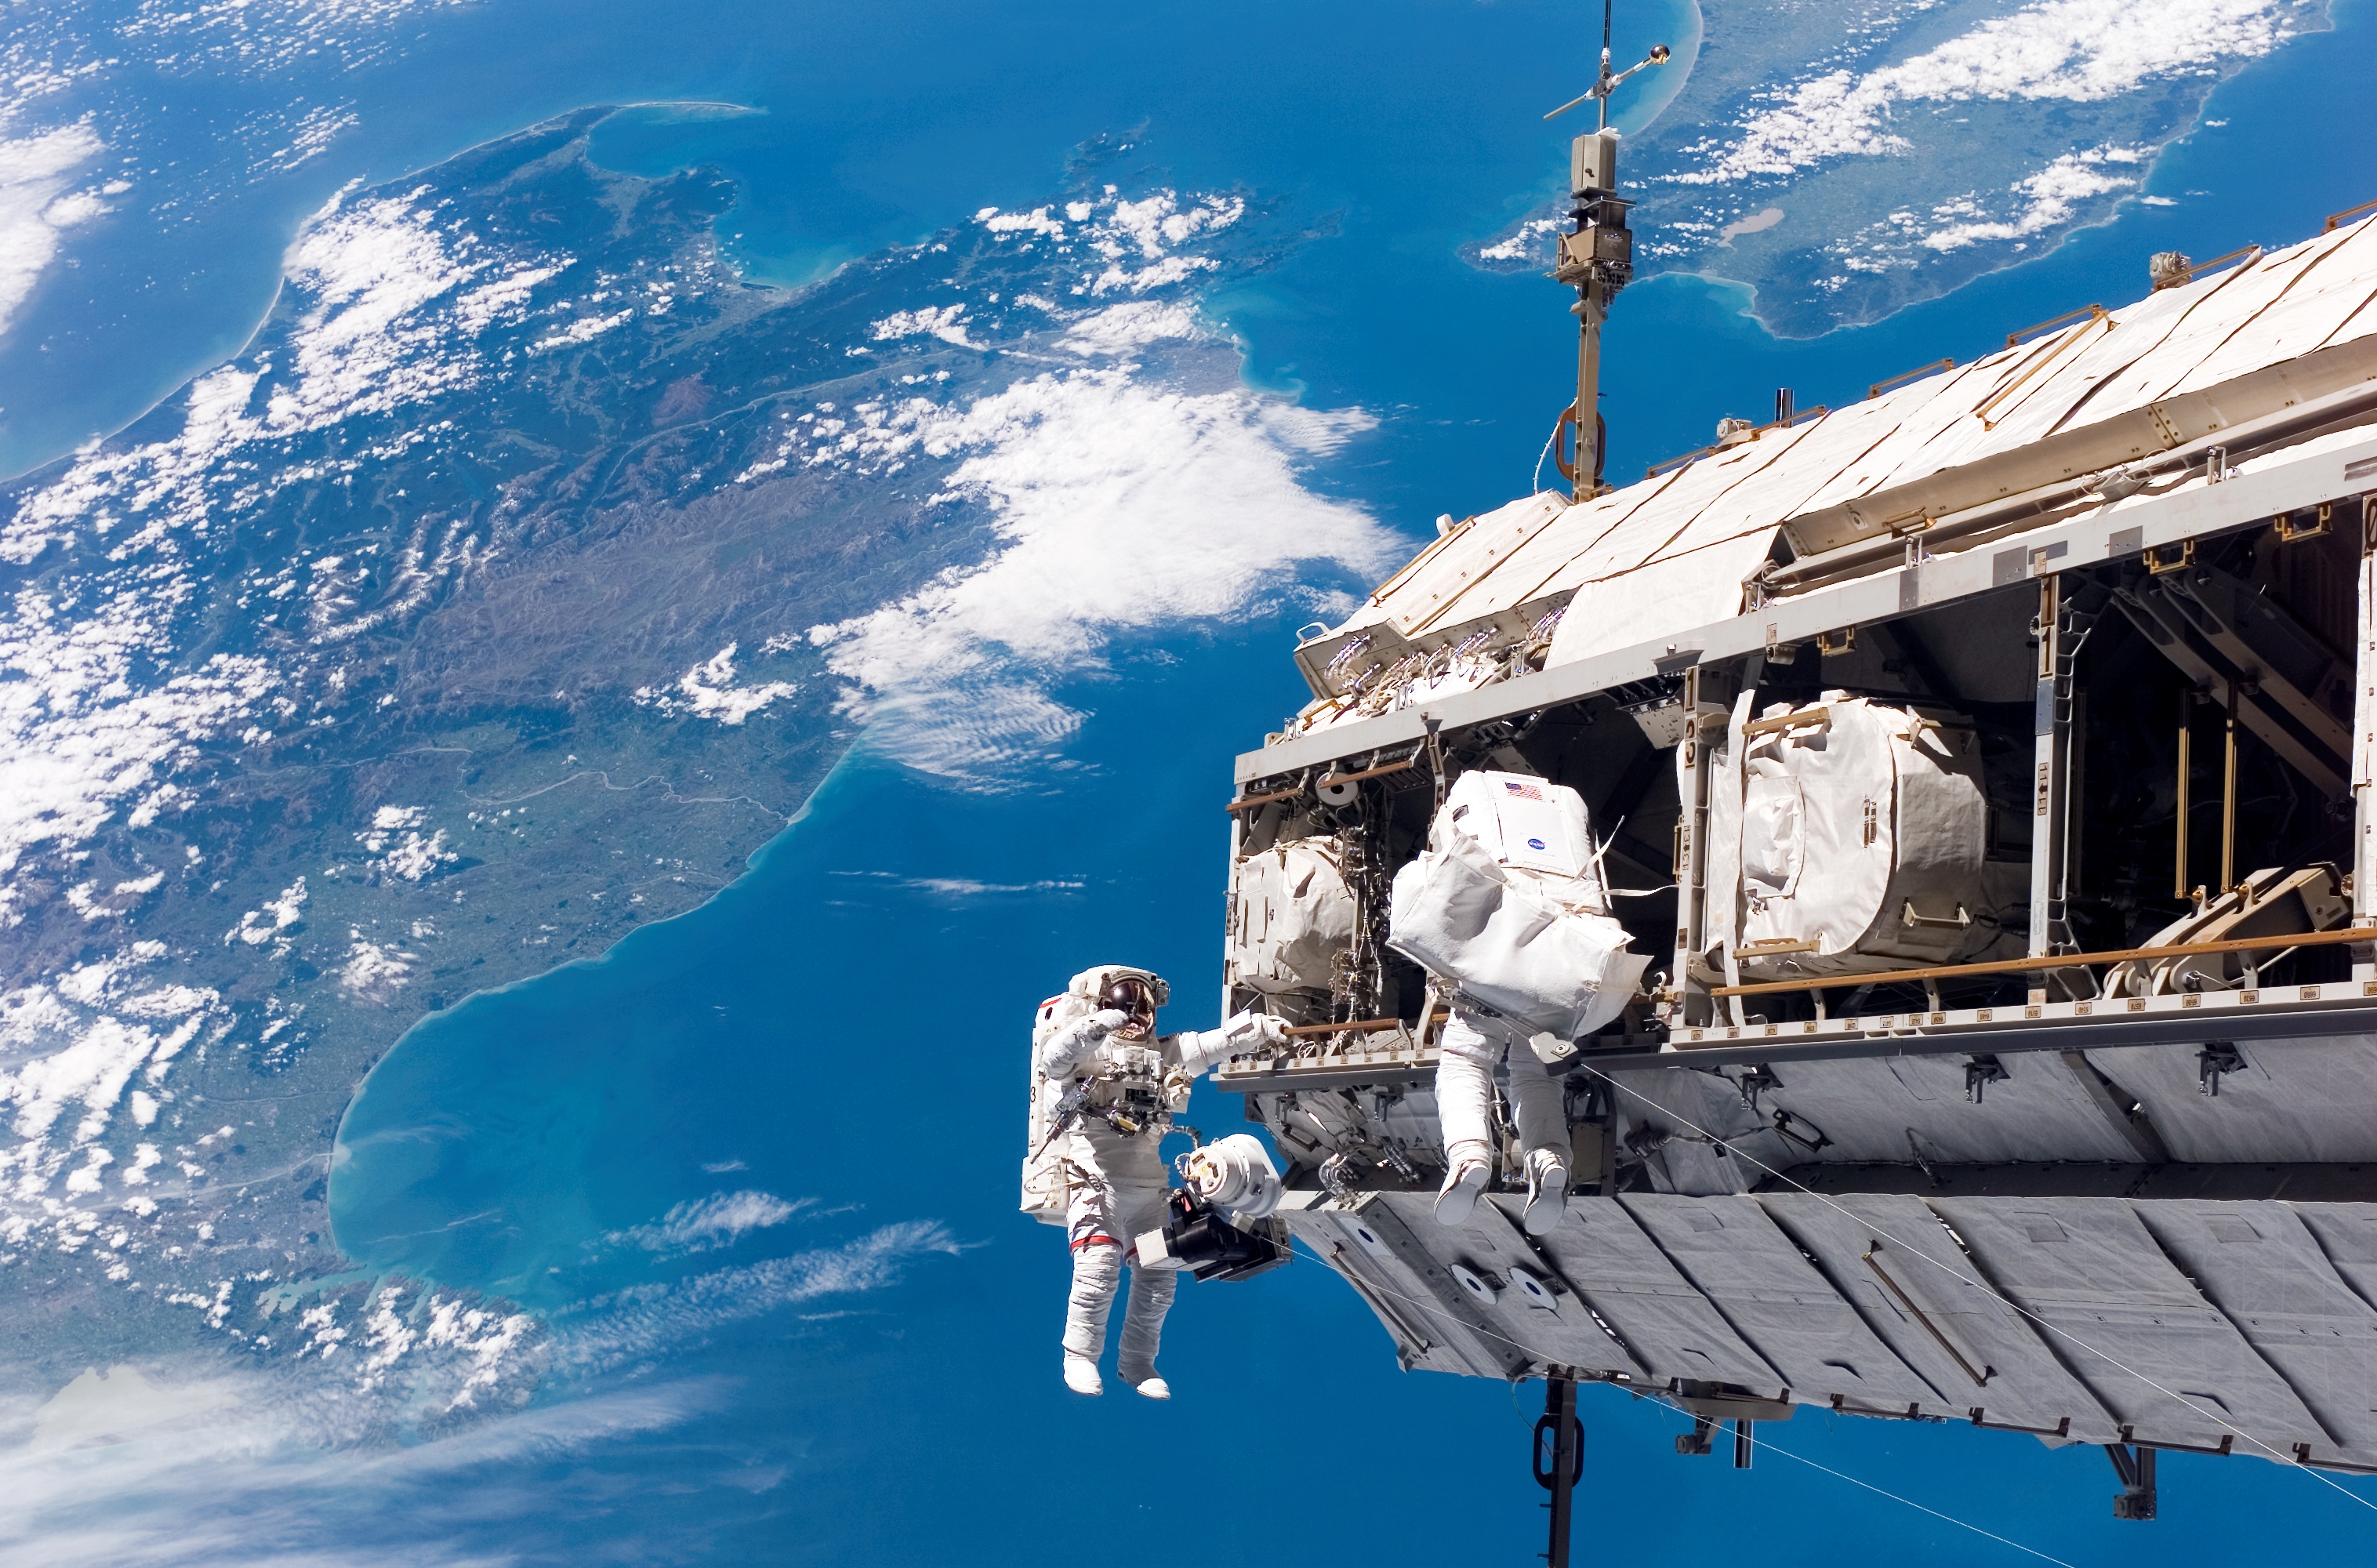 International Space Station - Wikipedia